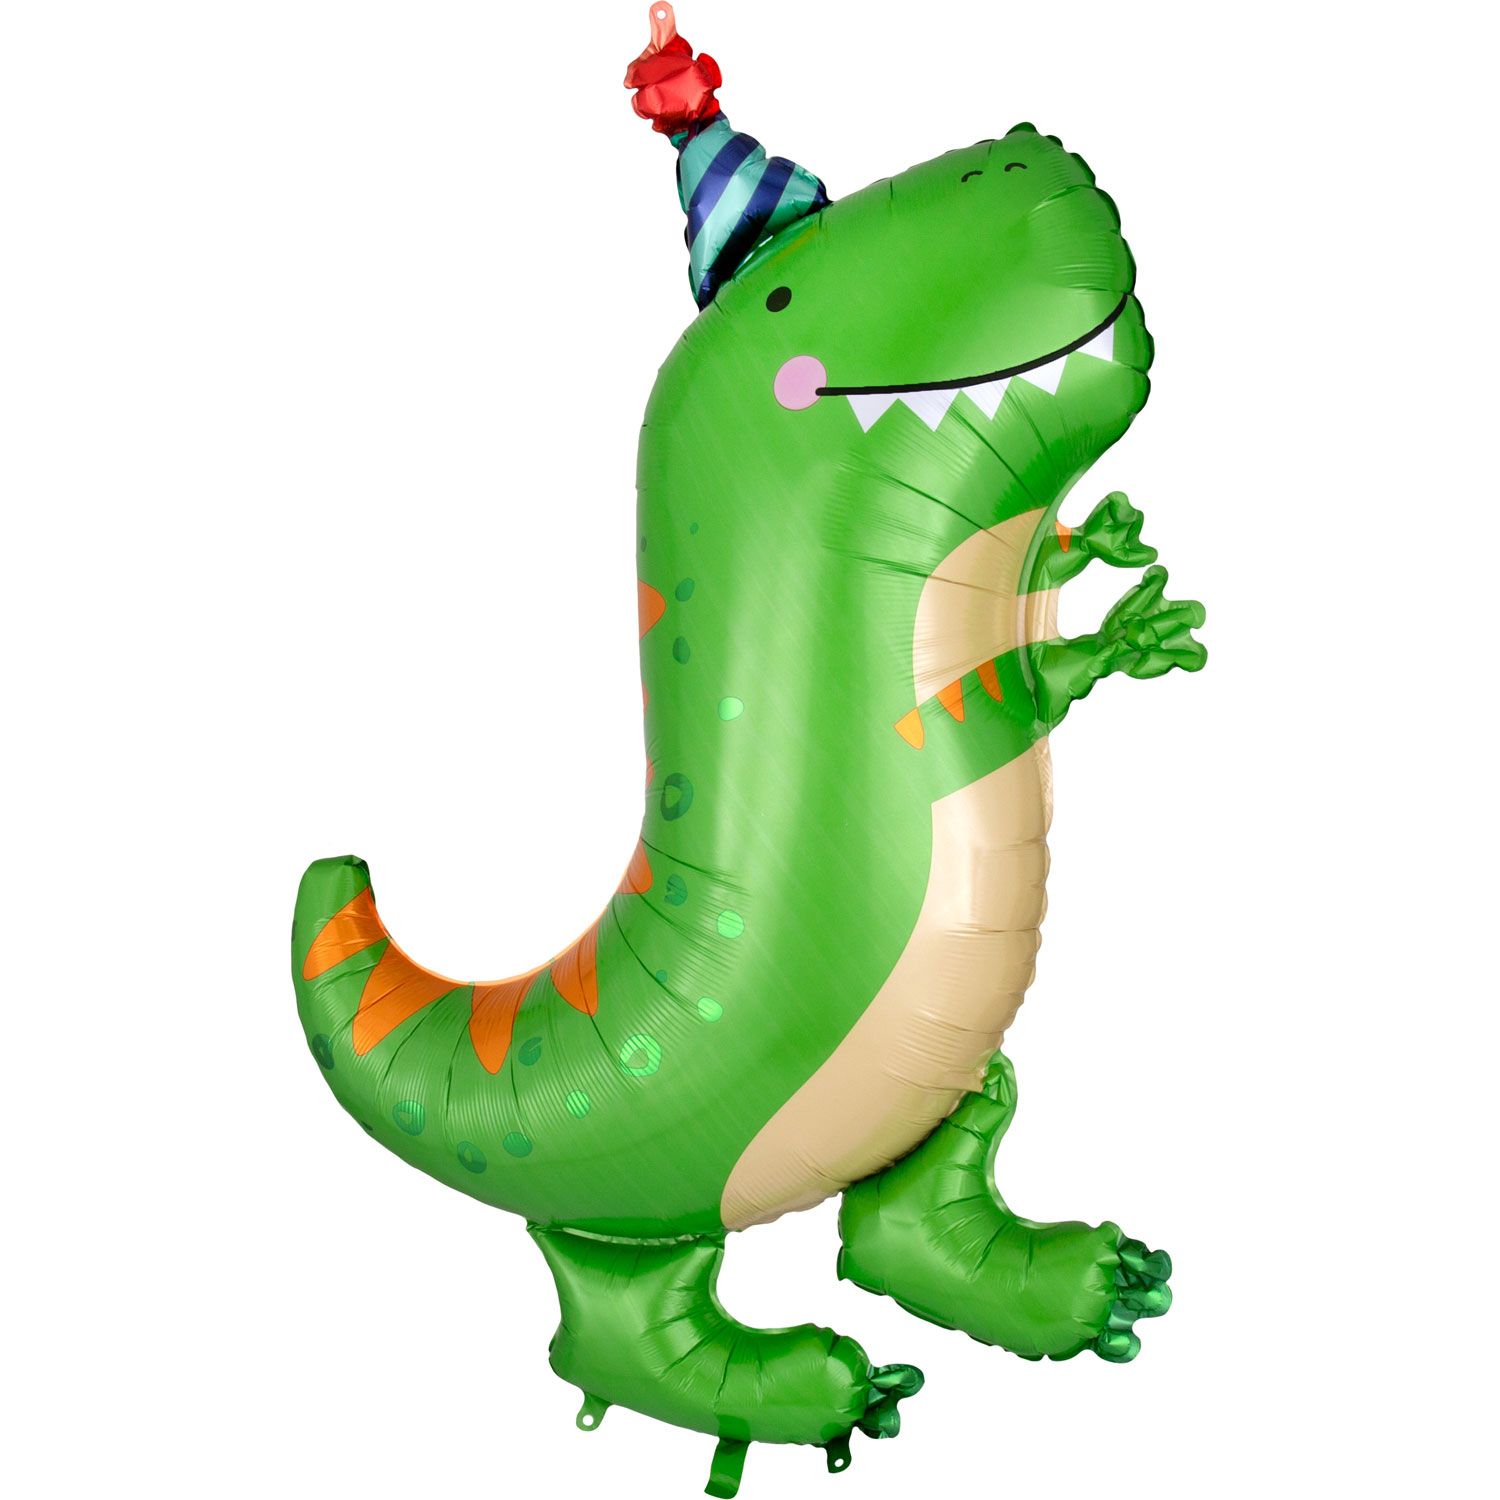 Гелиевый Шар фольгированная фигура Динозавр зелёный купить в магазине товаров для праздника Fiesta с доставкой по Нижнему Новгороду и области. Самовывоз ул. Большая Печерская 51. Воздушные шары PREMIUM качества из США и Европы!